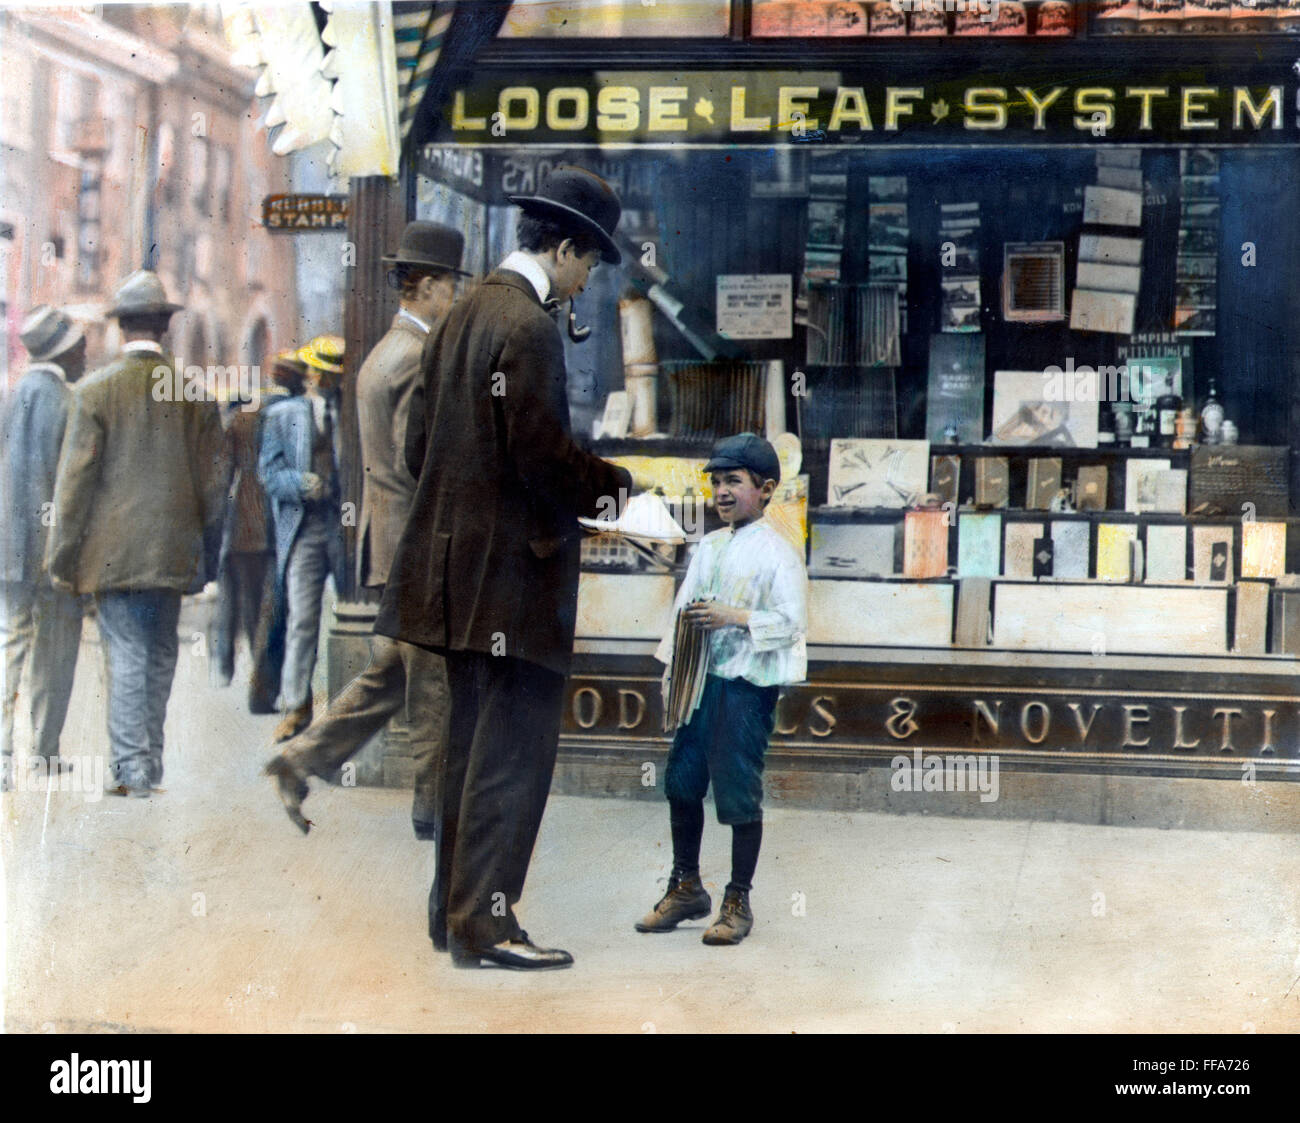 AMERIKANISCHE ZEITUNGSJUNGE, 1910. NUM Zeitungsjunge am Arbeitsplatz im Jahr 1910. Öl über Foto. Stockfoto